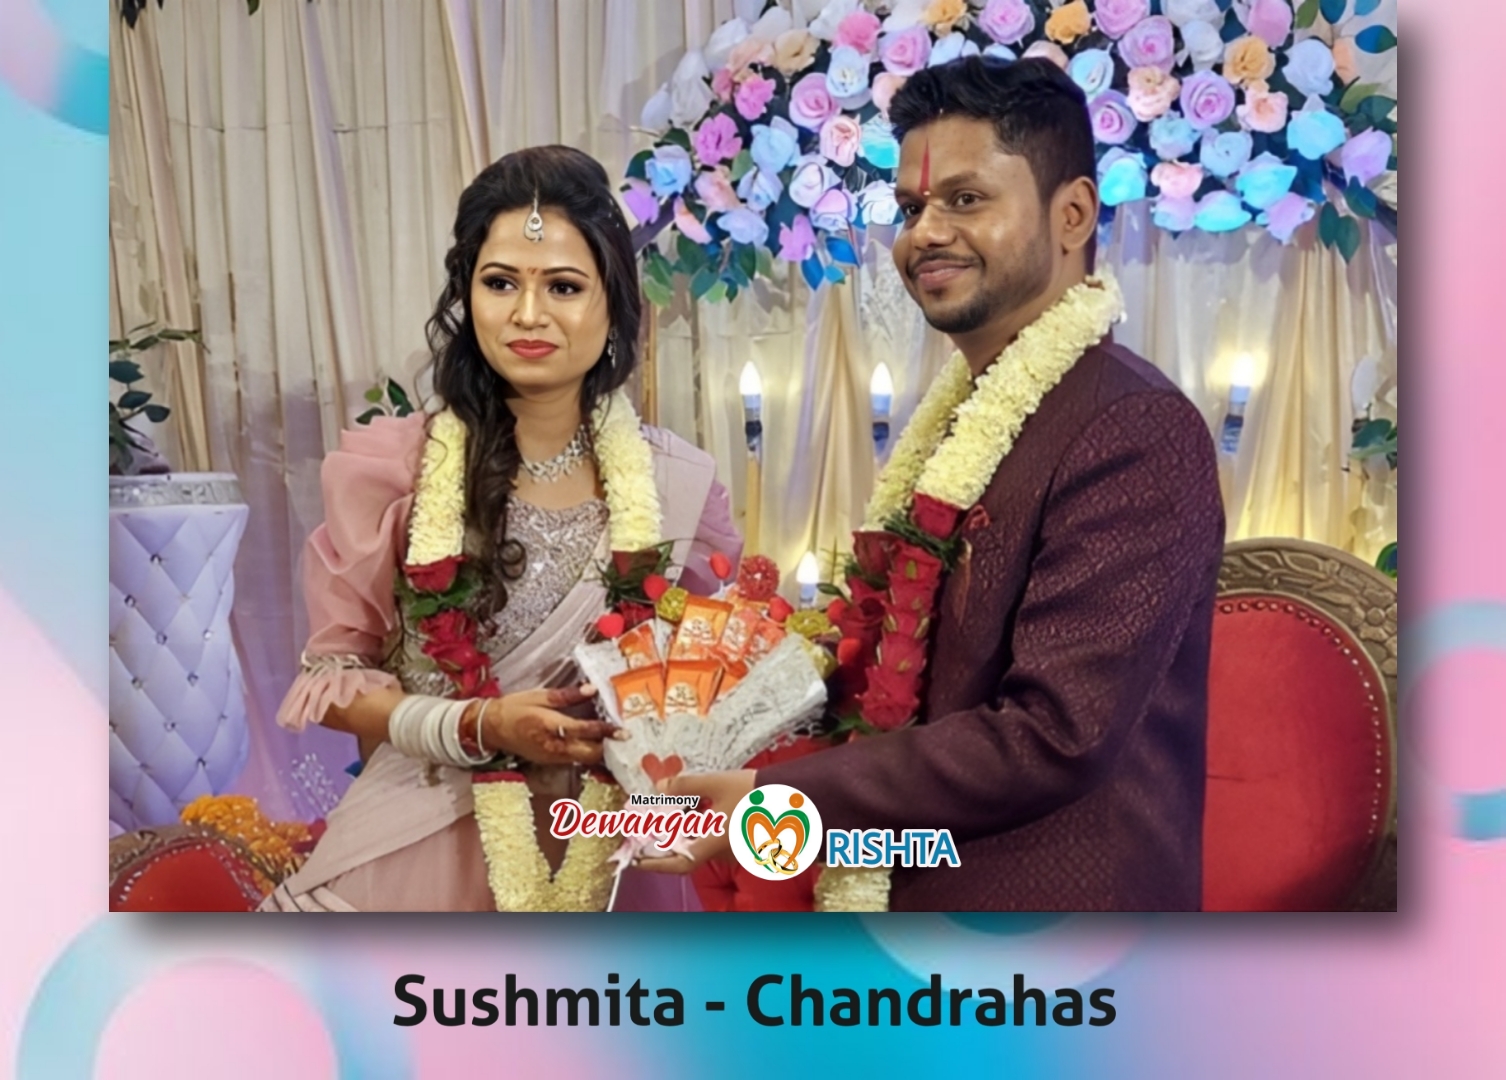 Sushmita and Chandrahas